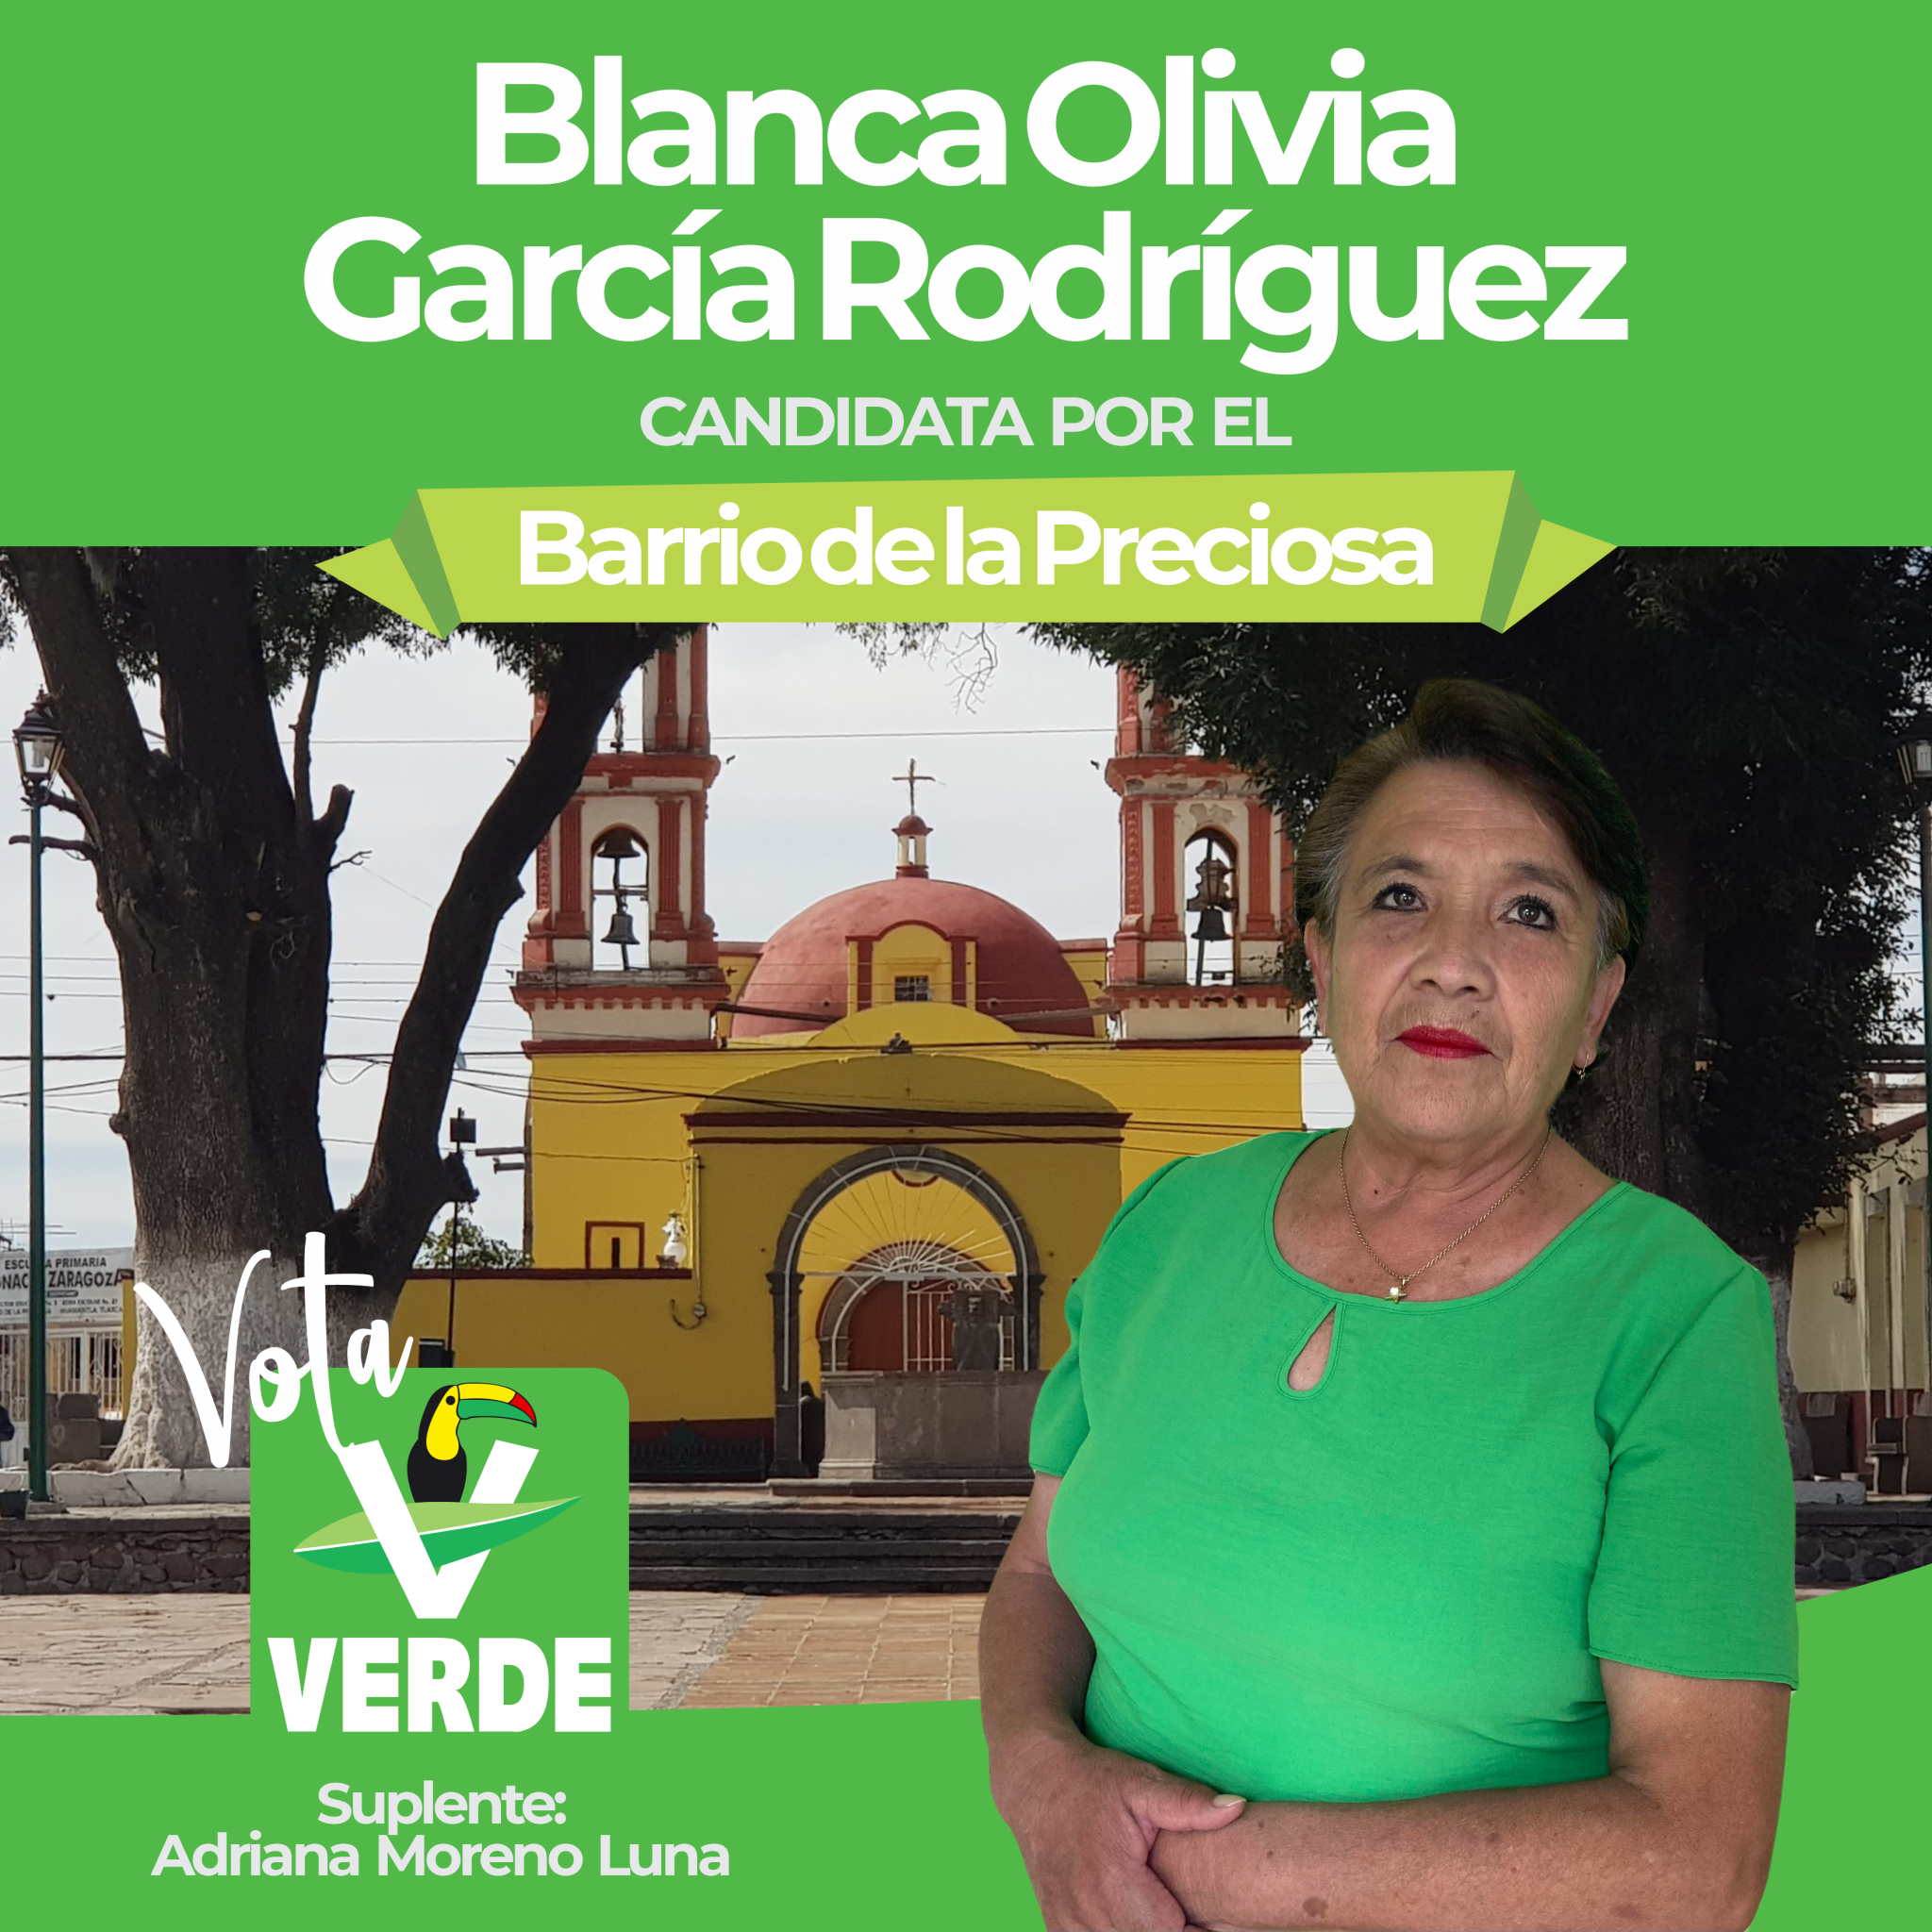 Blanca Olivia García Rodríguez